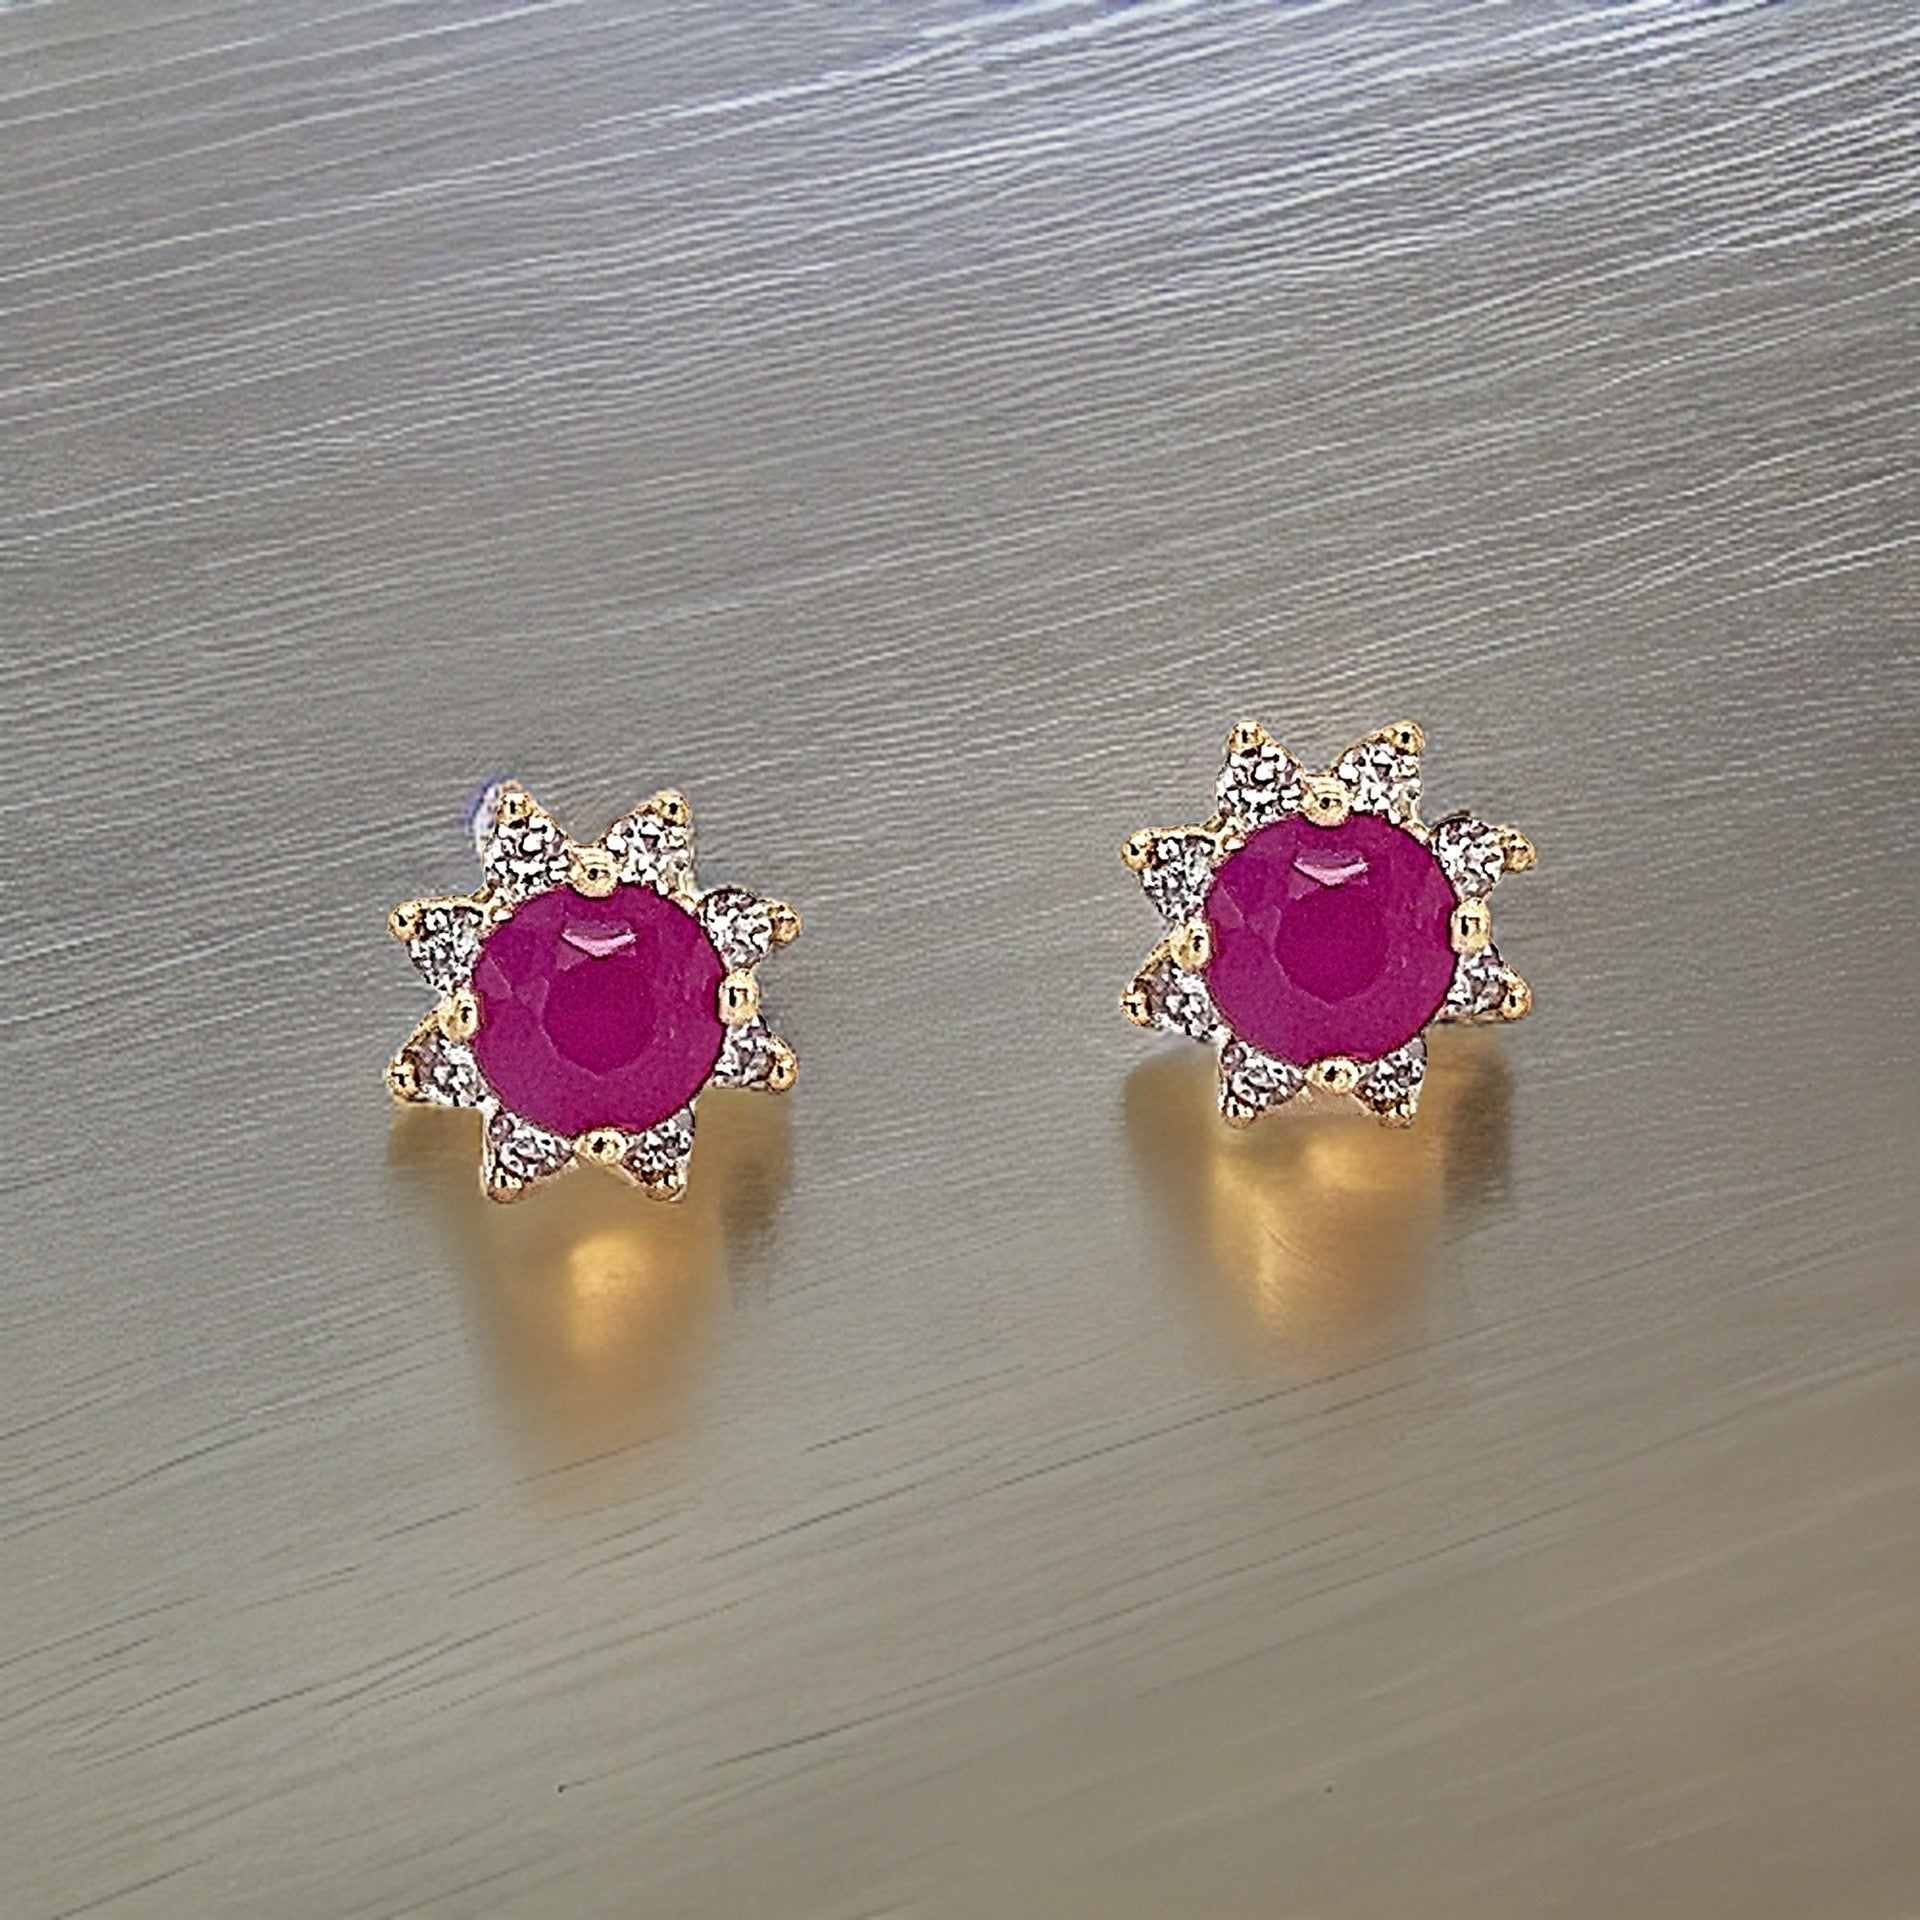 Natural Ruby Diamond Earrings 14k Gold 1.25 TCW Certified $2,290 210748 - Certified Fine Jewelry